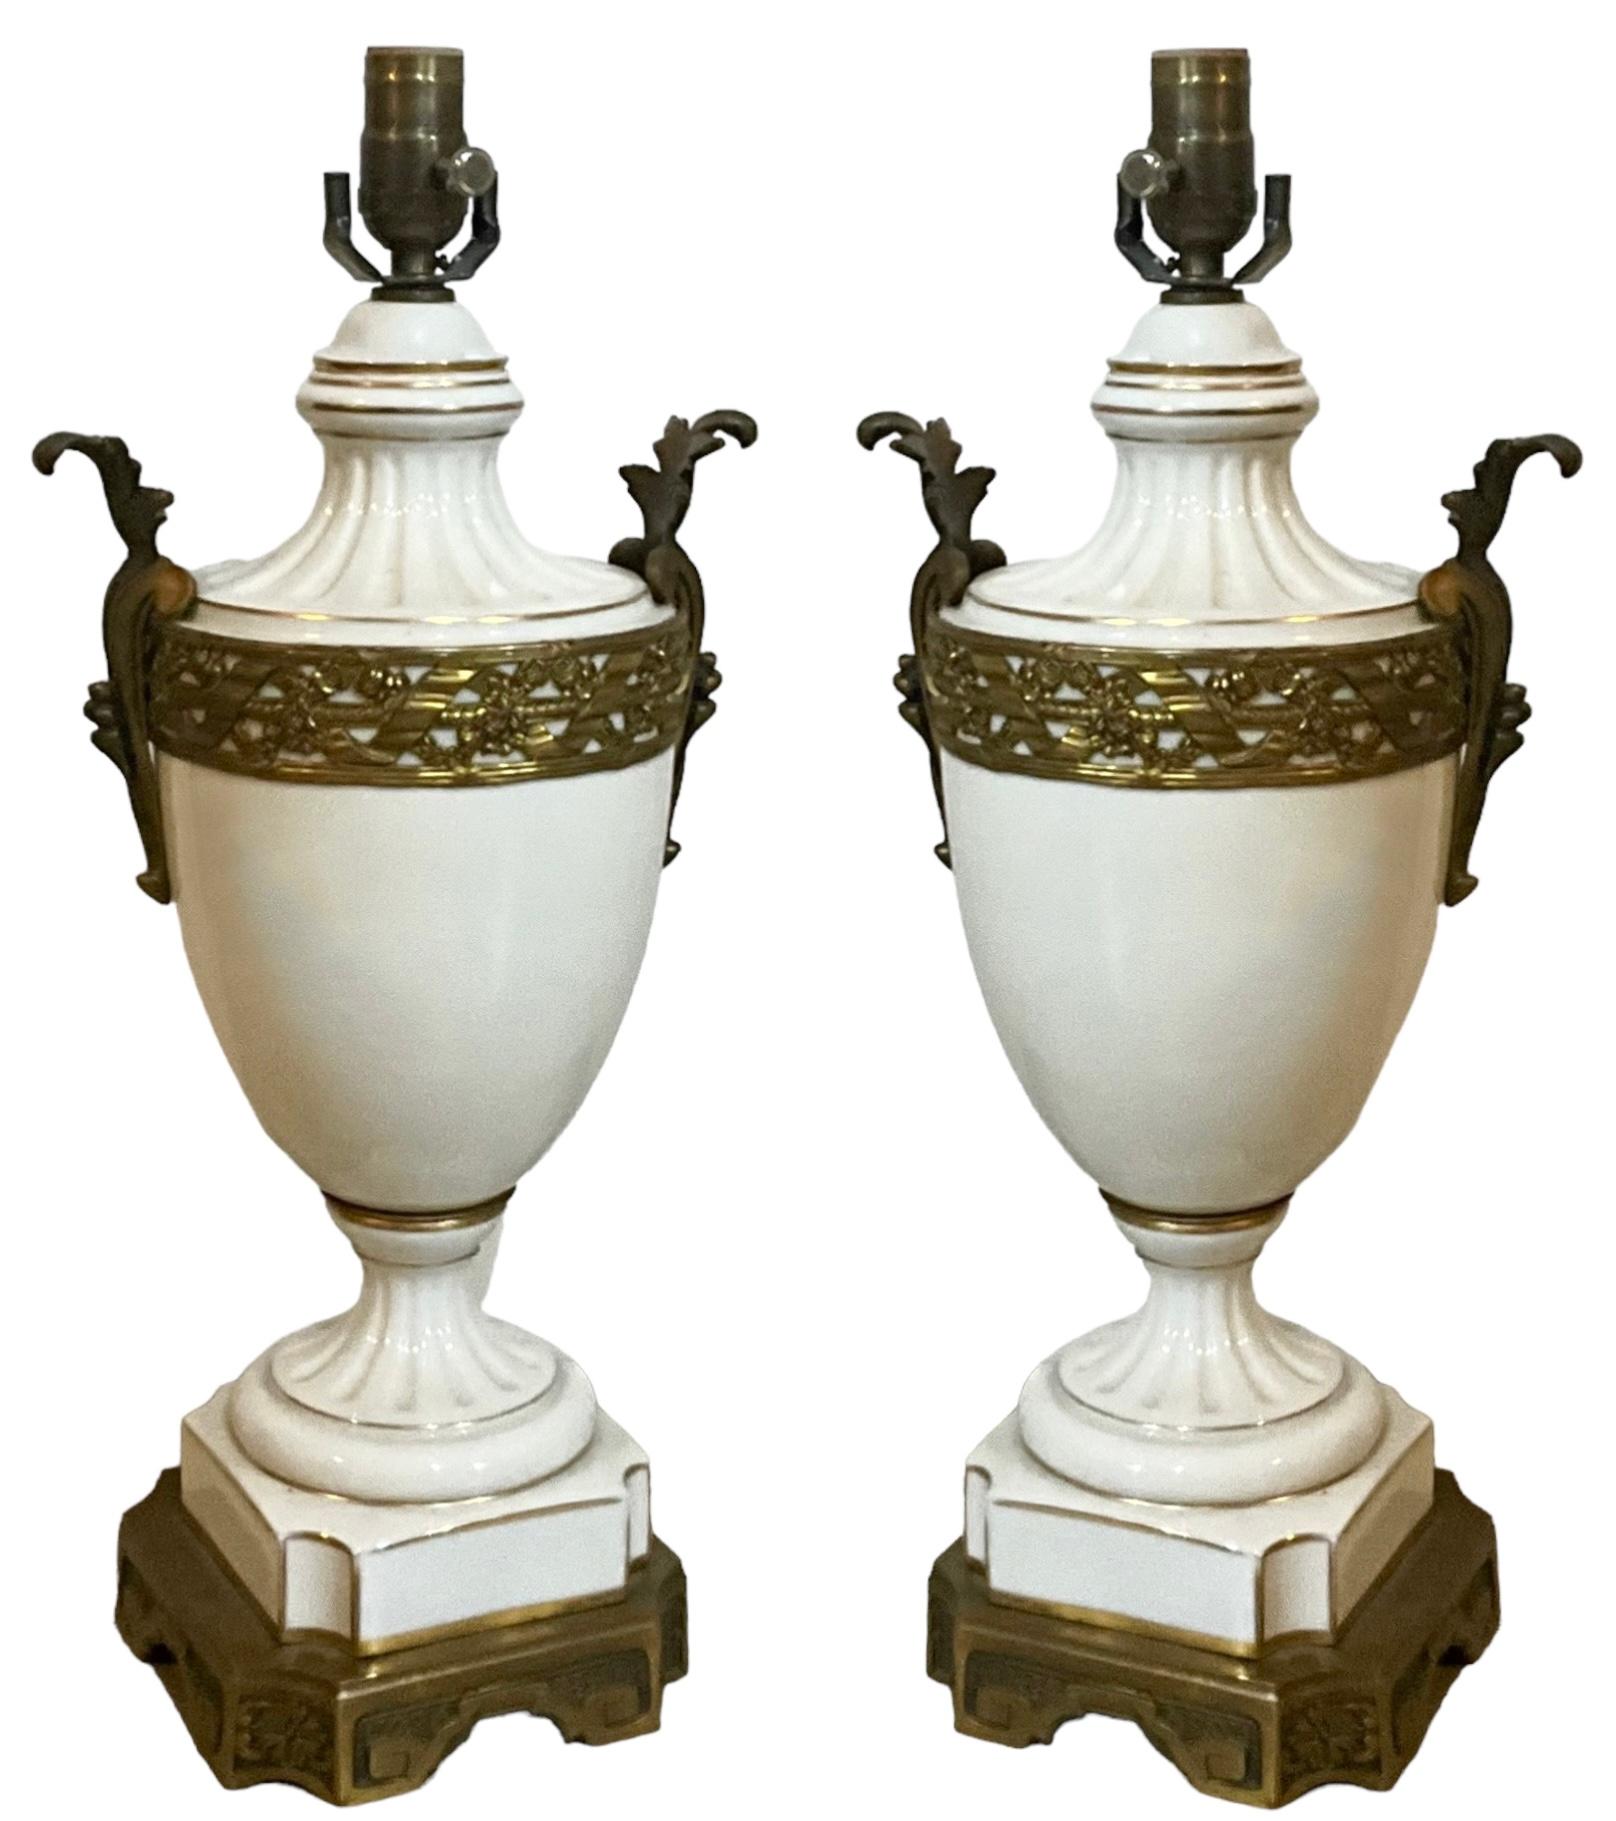 Elles sont magnifiques ! Il s'agit d'une paire de lampes en porcelaine blanche de style néoclassique français avec des accents de bronze doré et doré. Le câblage est neuf et je crois qu'ils sont signés à l'intérieur de la potence. Ils ont un attrait